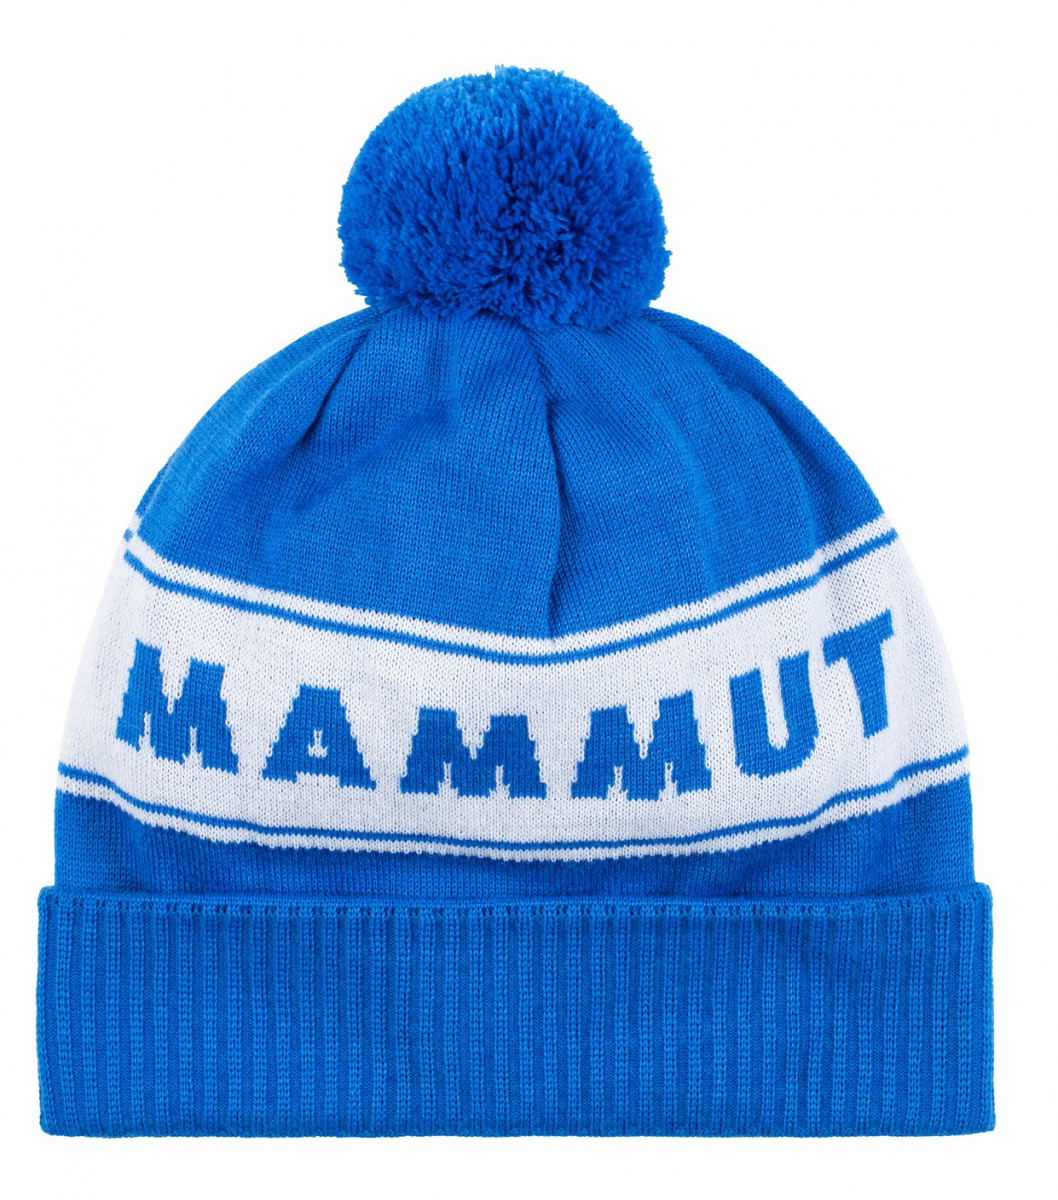 Čepice Mammut Peaks Beanie Barva: modrá/bíla